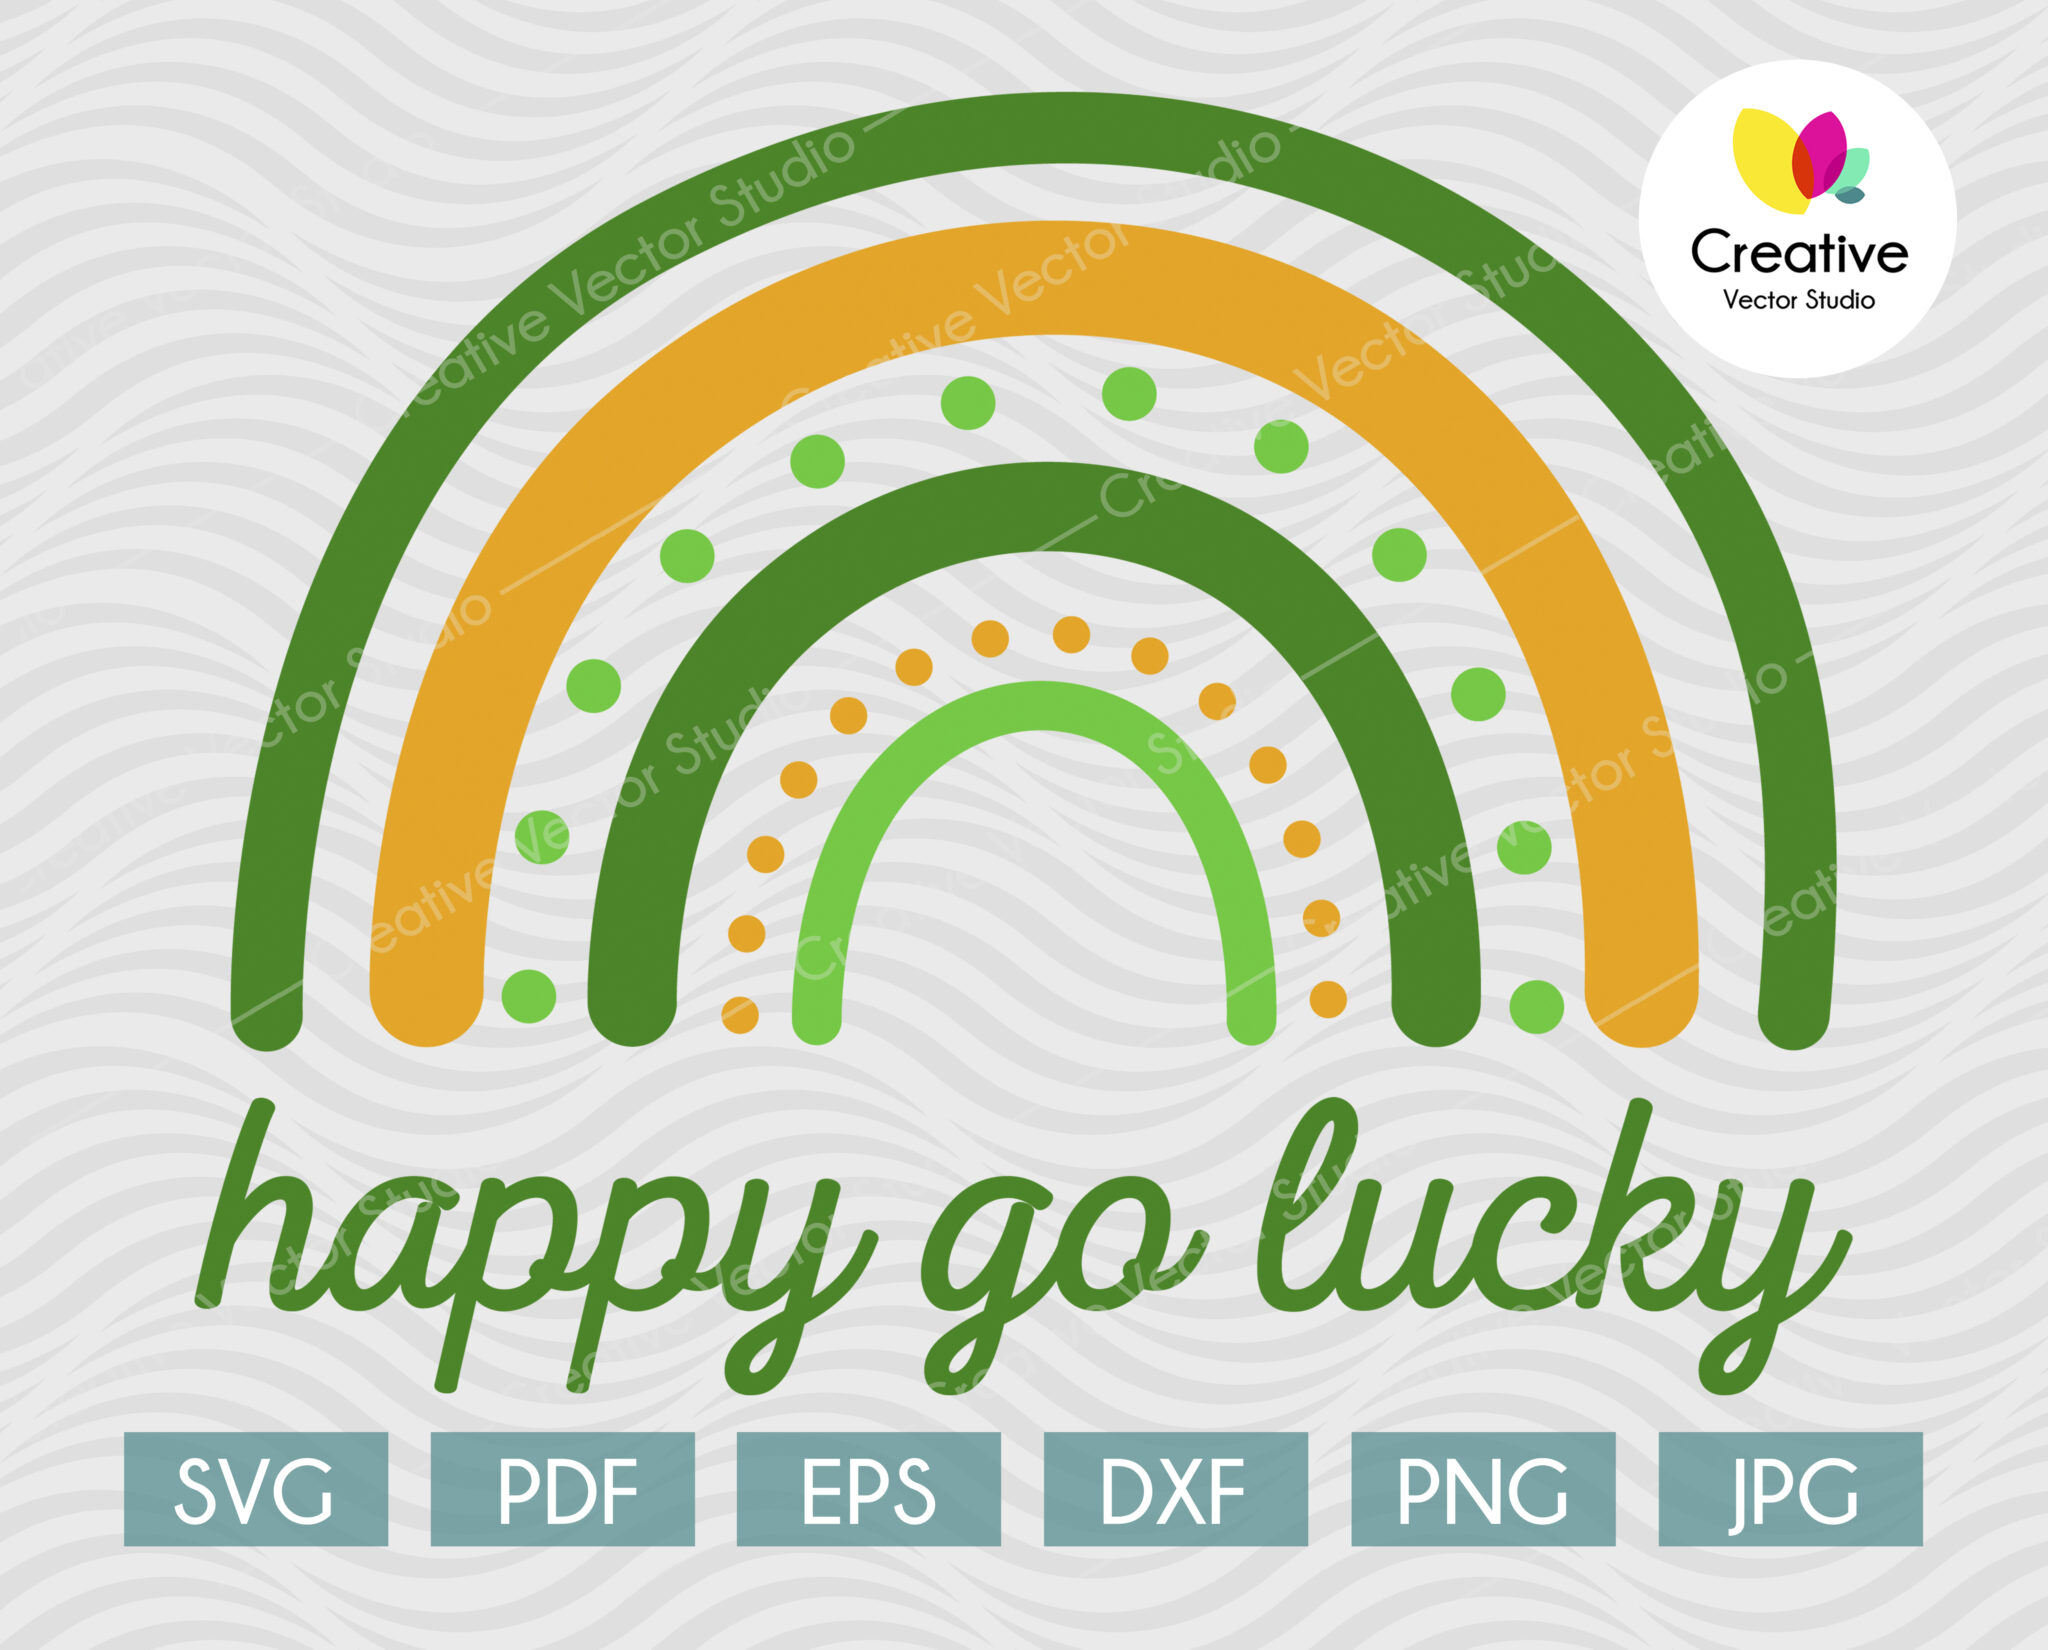 Happy Go Lucky SVG, Lucky Rainbow SVG - Creative Vector Studio